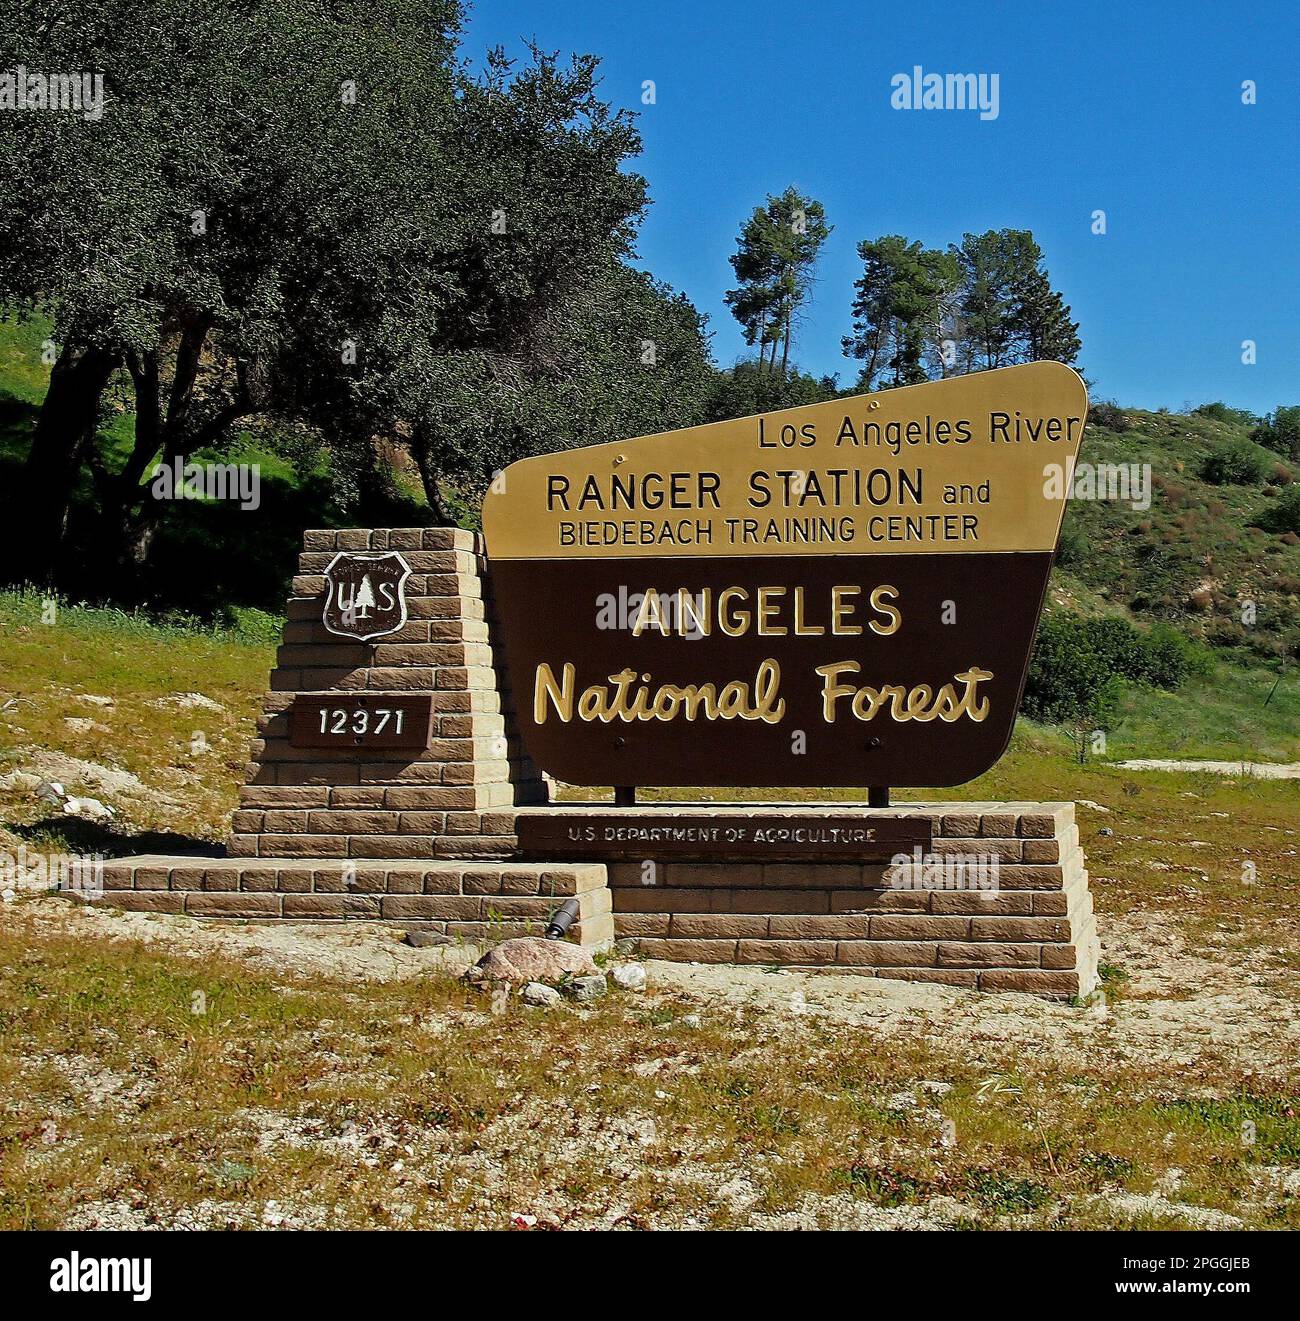 Los Angeles Ranger Station und Biedebach Training Center, Angeles National Forest, Schild, Kalifornien Stockfoto